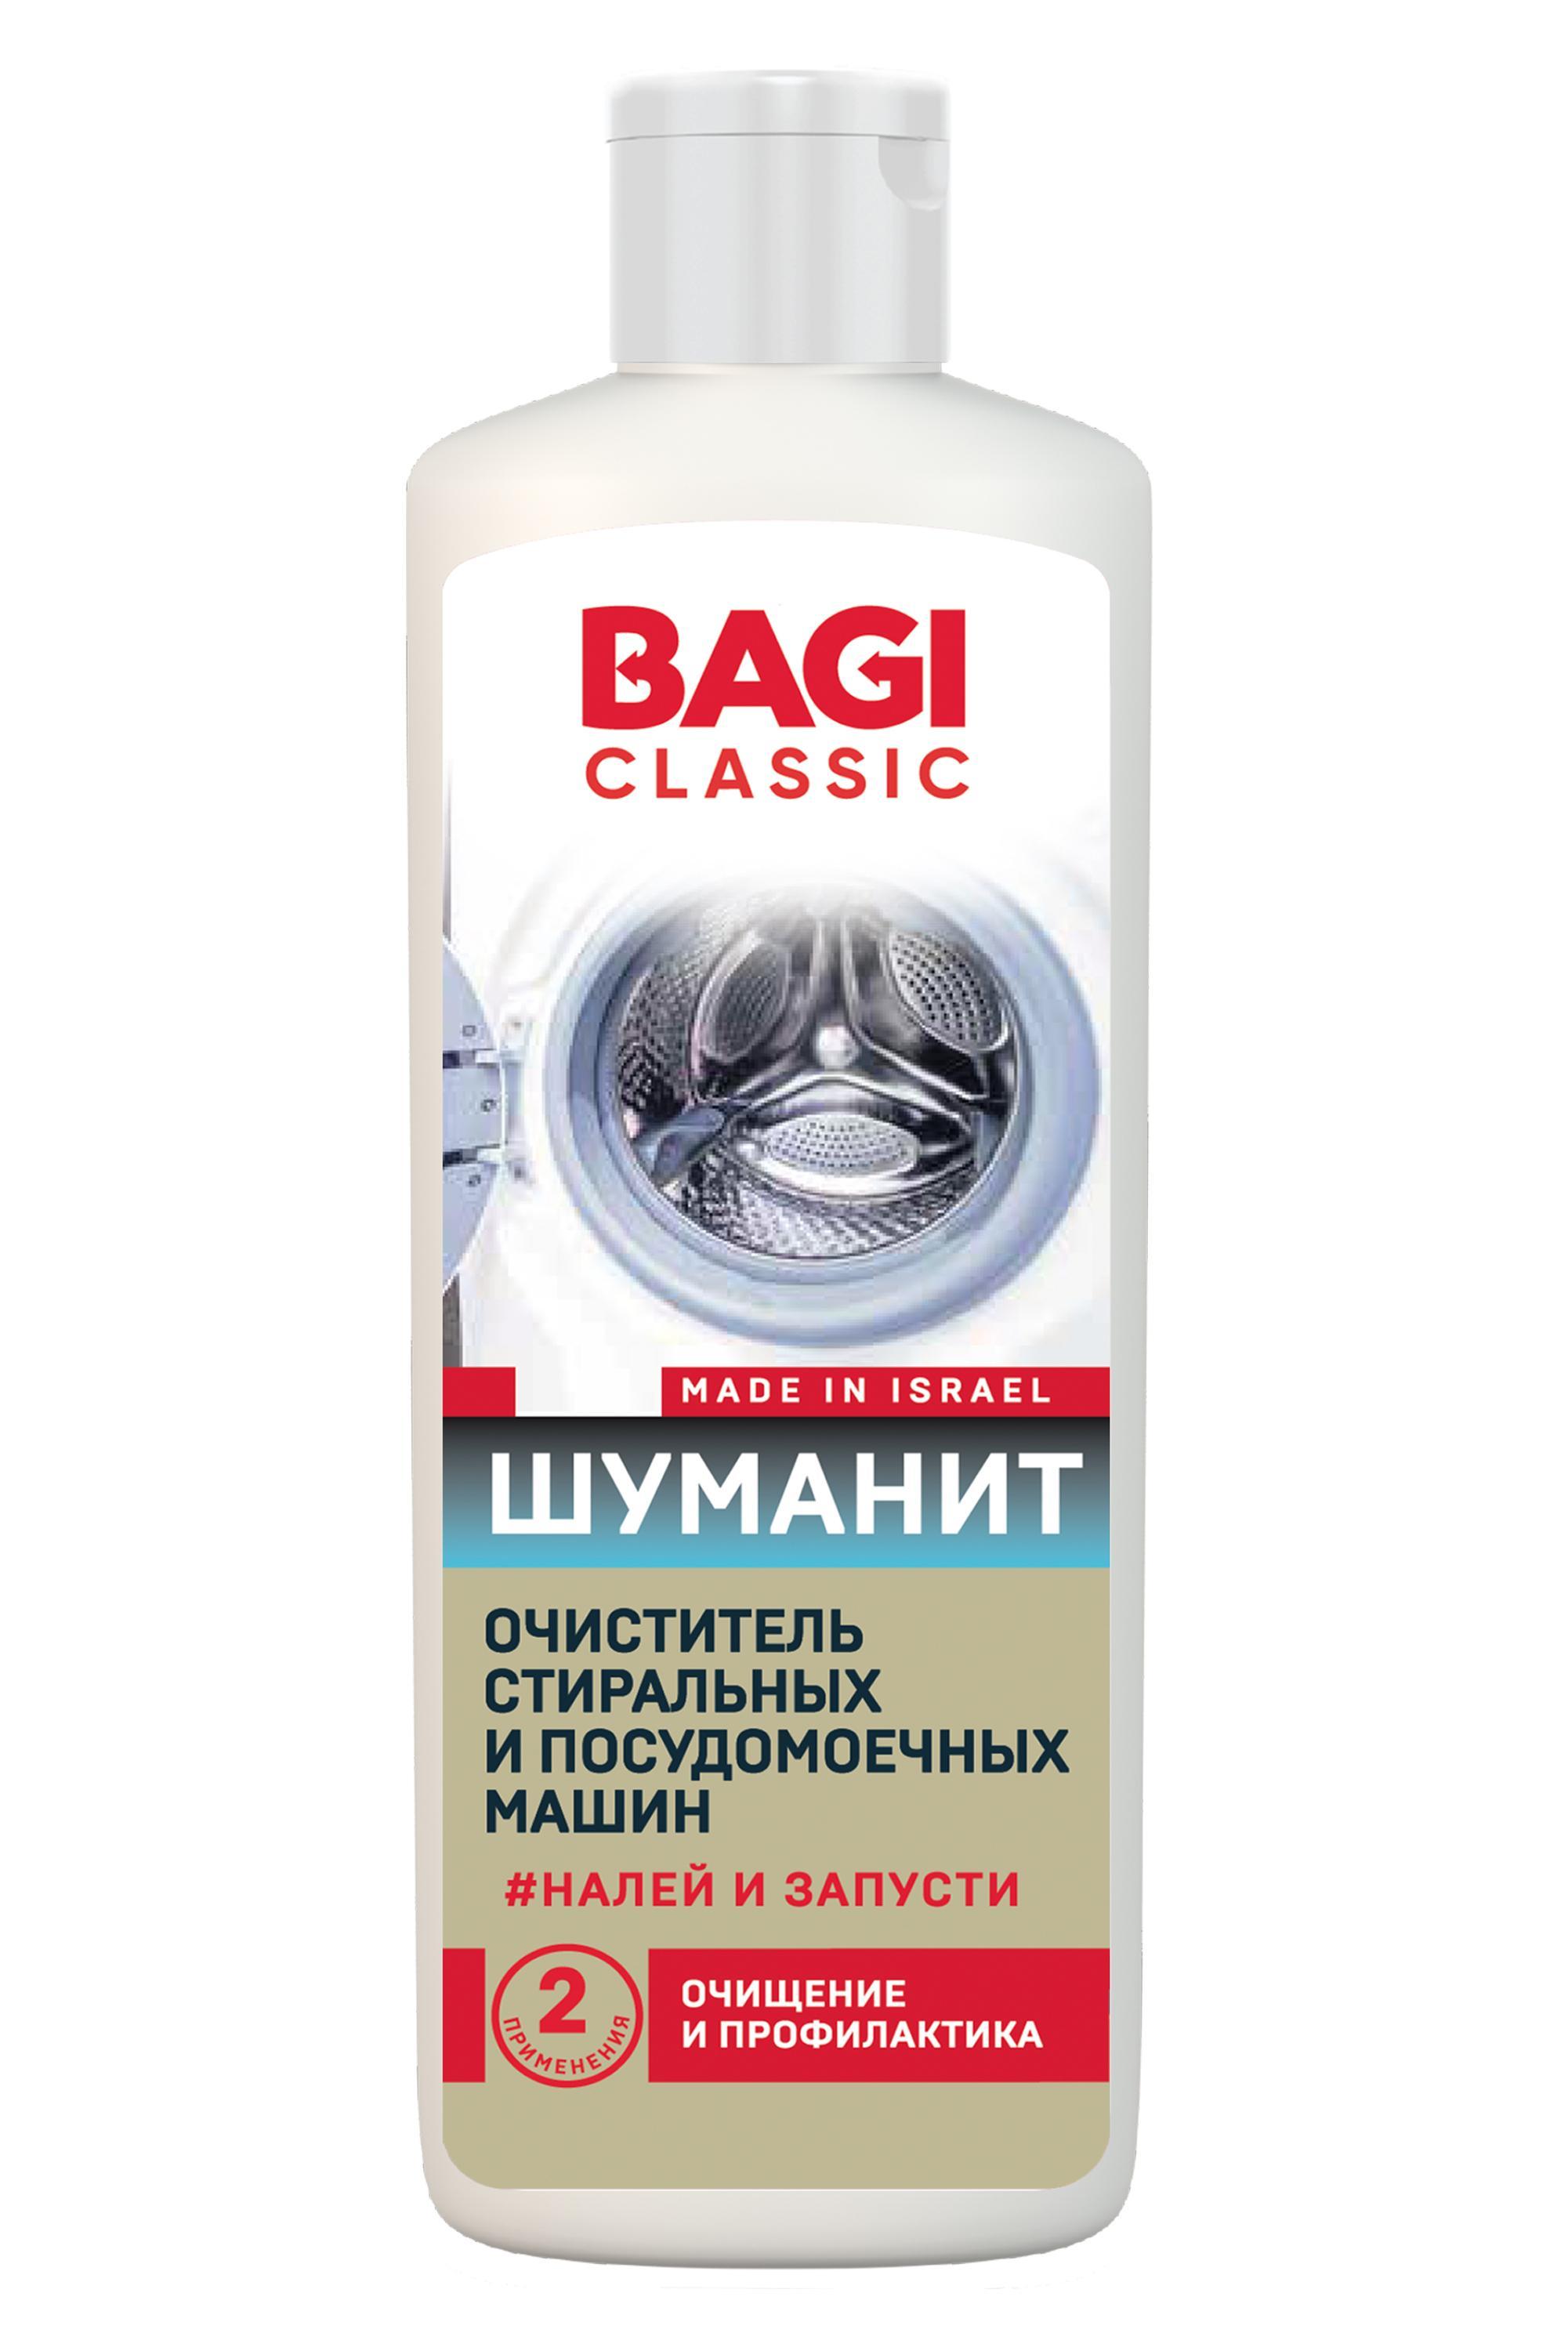 Очиститель стиральных и посудом машин Bagi Classic Шуманит 200 мл., ПЭТ